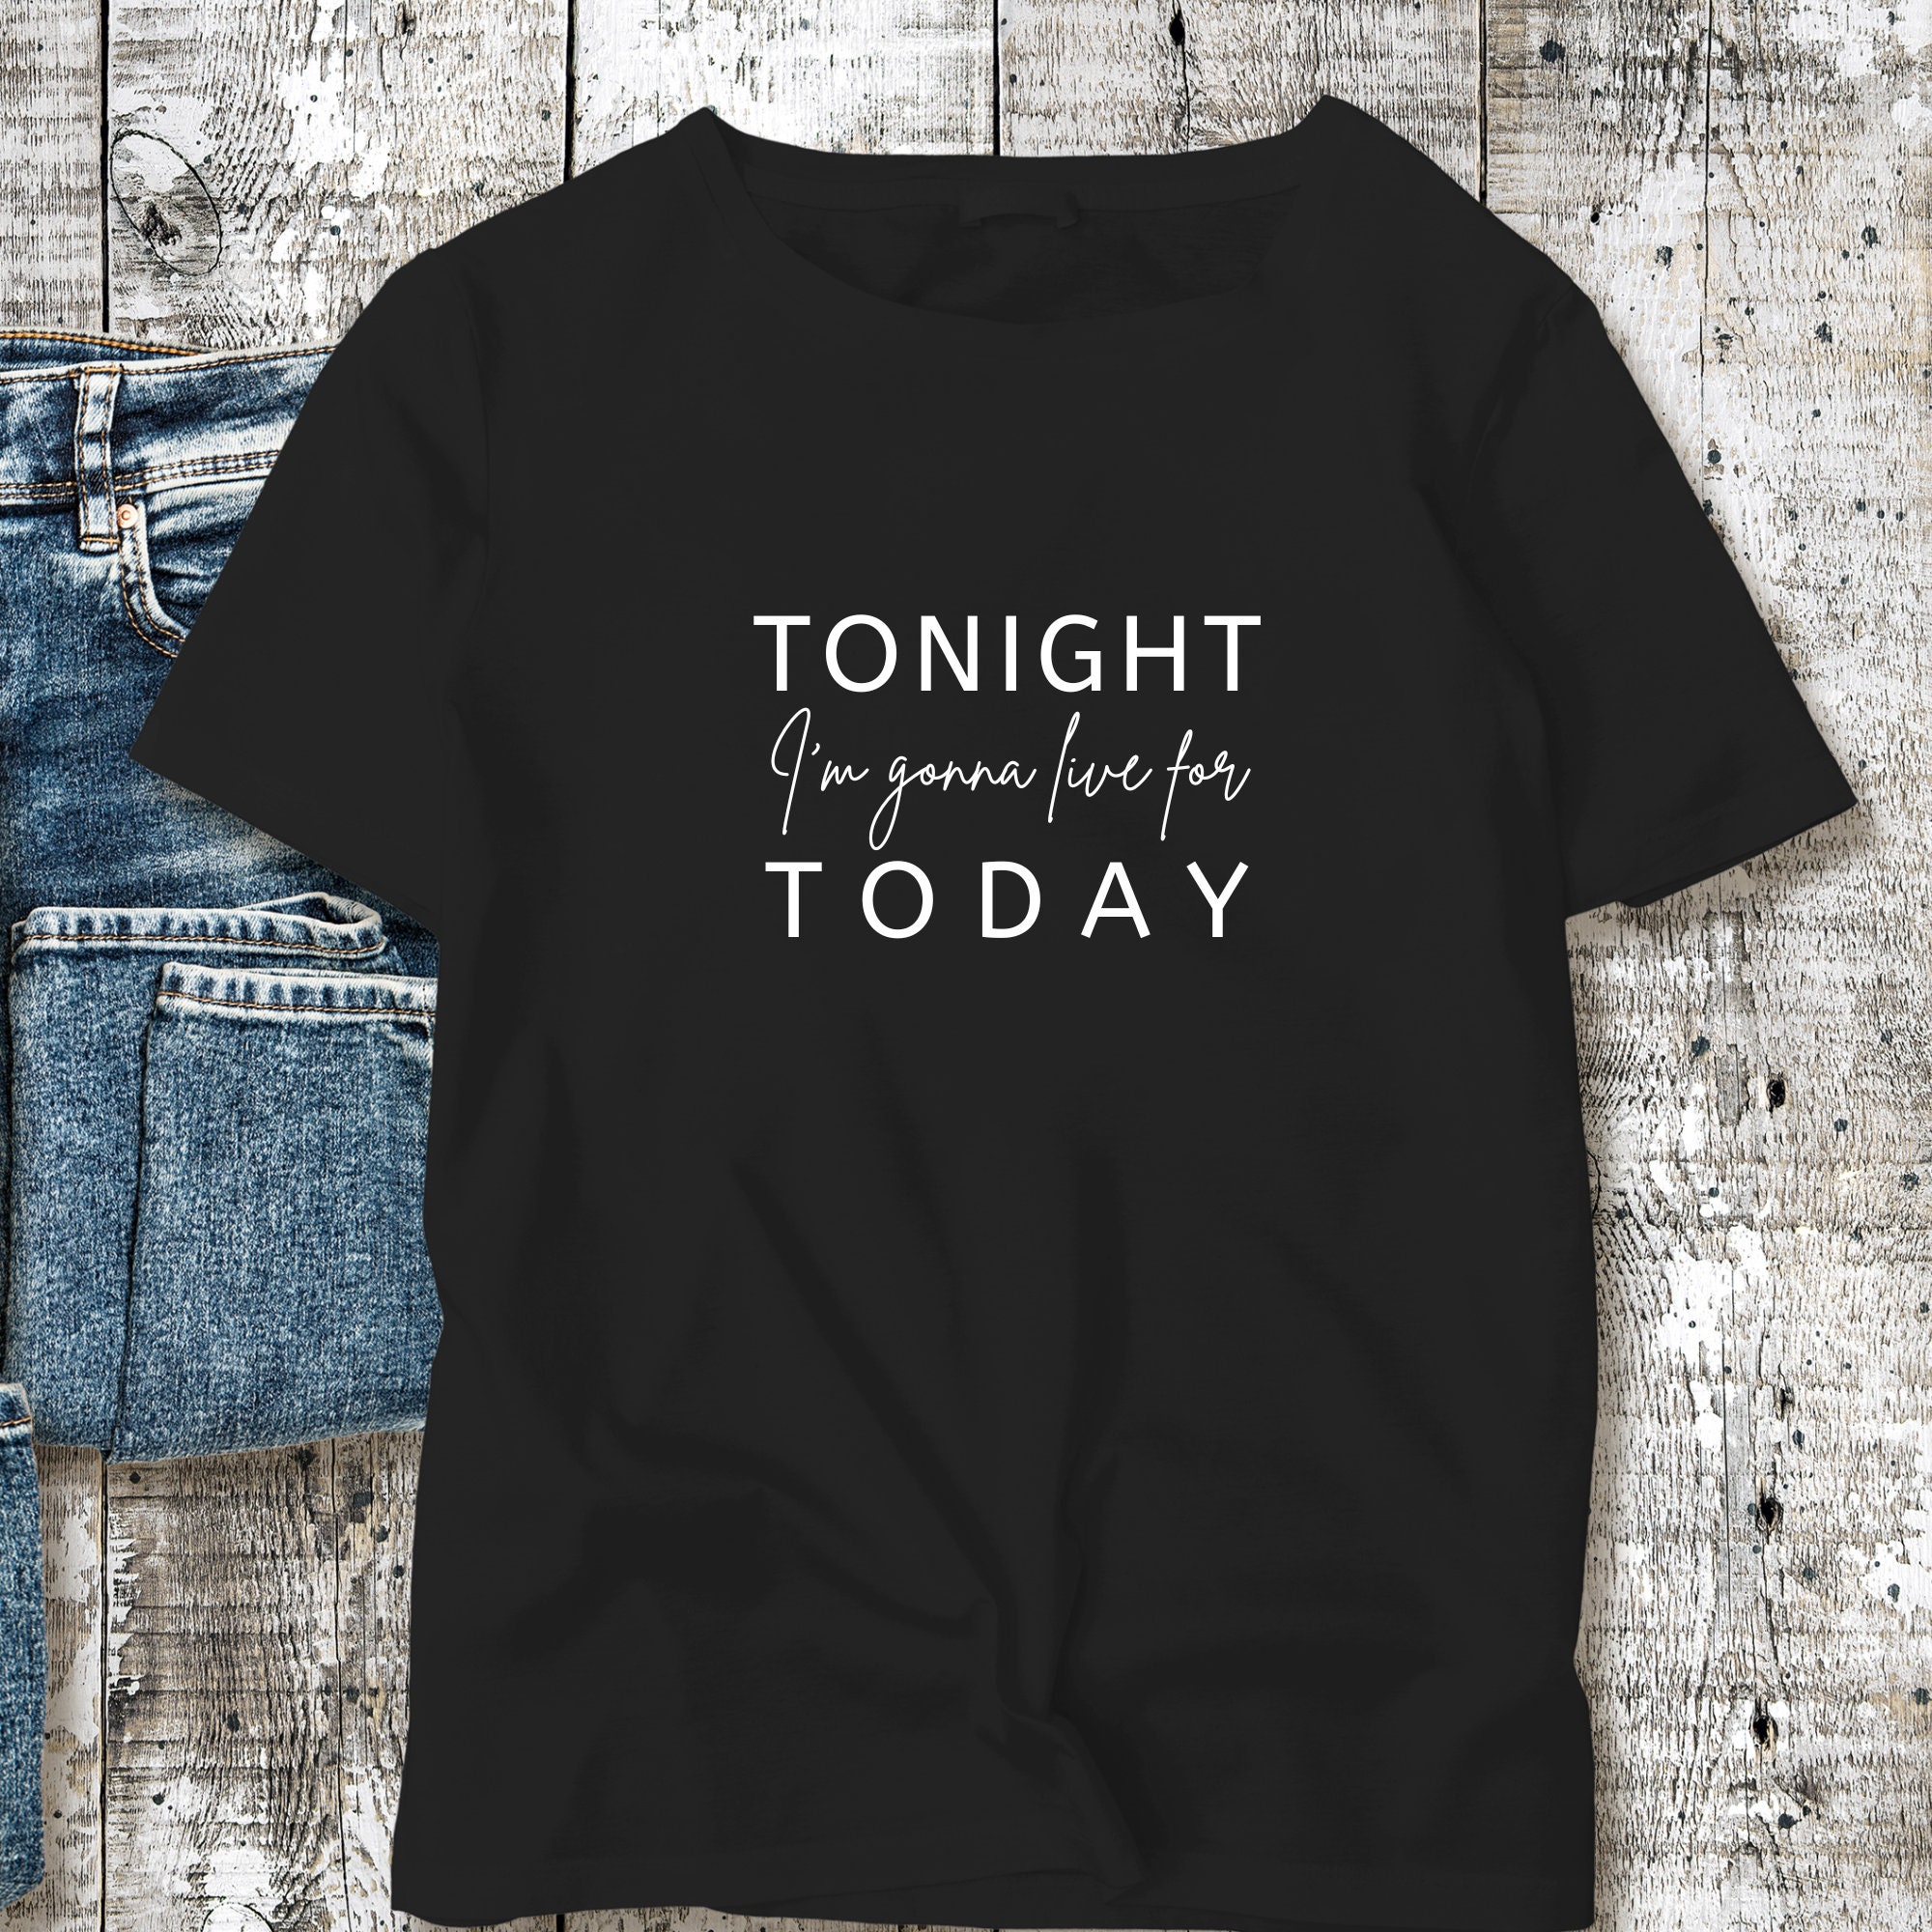 Discover Heute Abend werde ich für heute leben... Robbie WIlliams T-Shirt